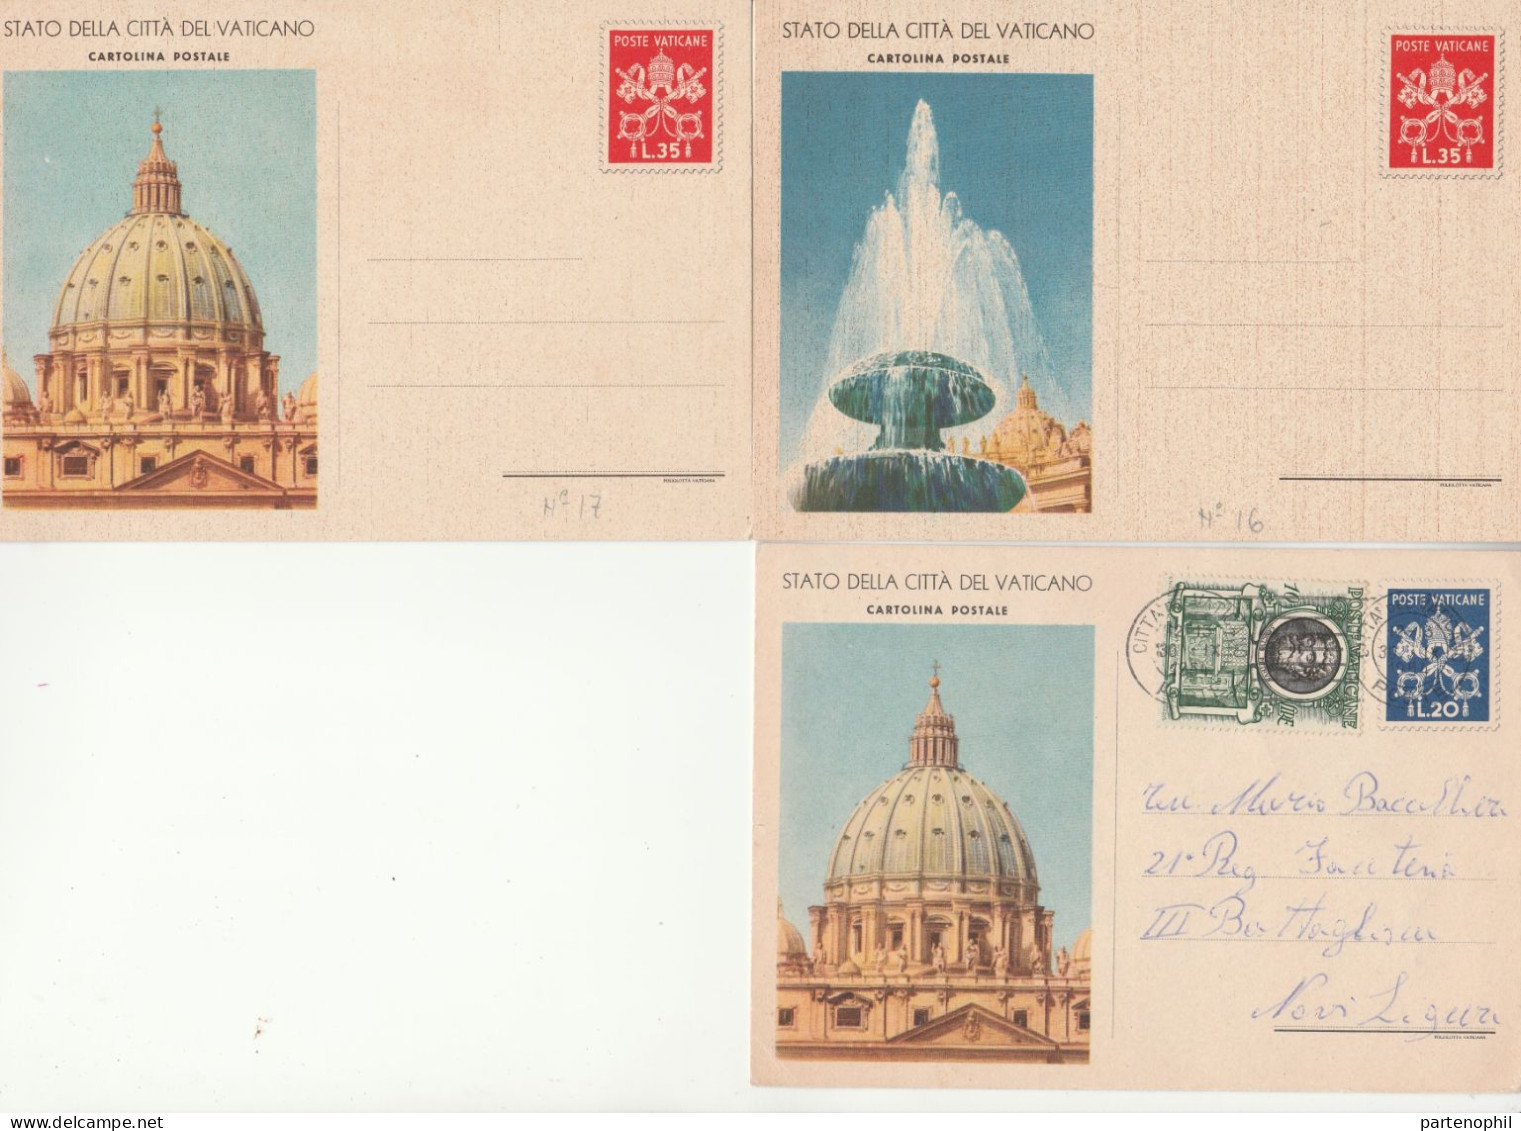 673 - Vaticano - Interi Postali - 1947-58 Insieme di 28 interi del Vaticano incentrato sulle vedute tipiche dello stato,